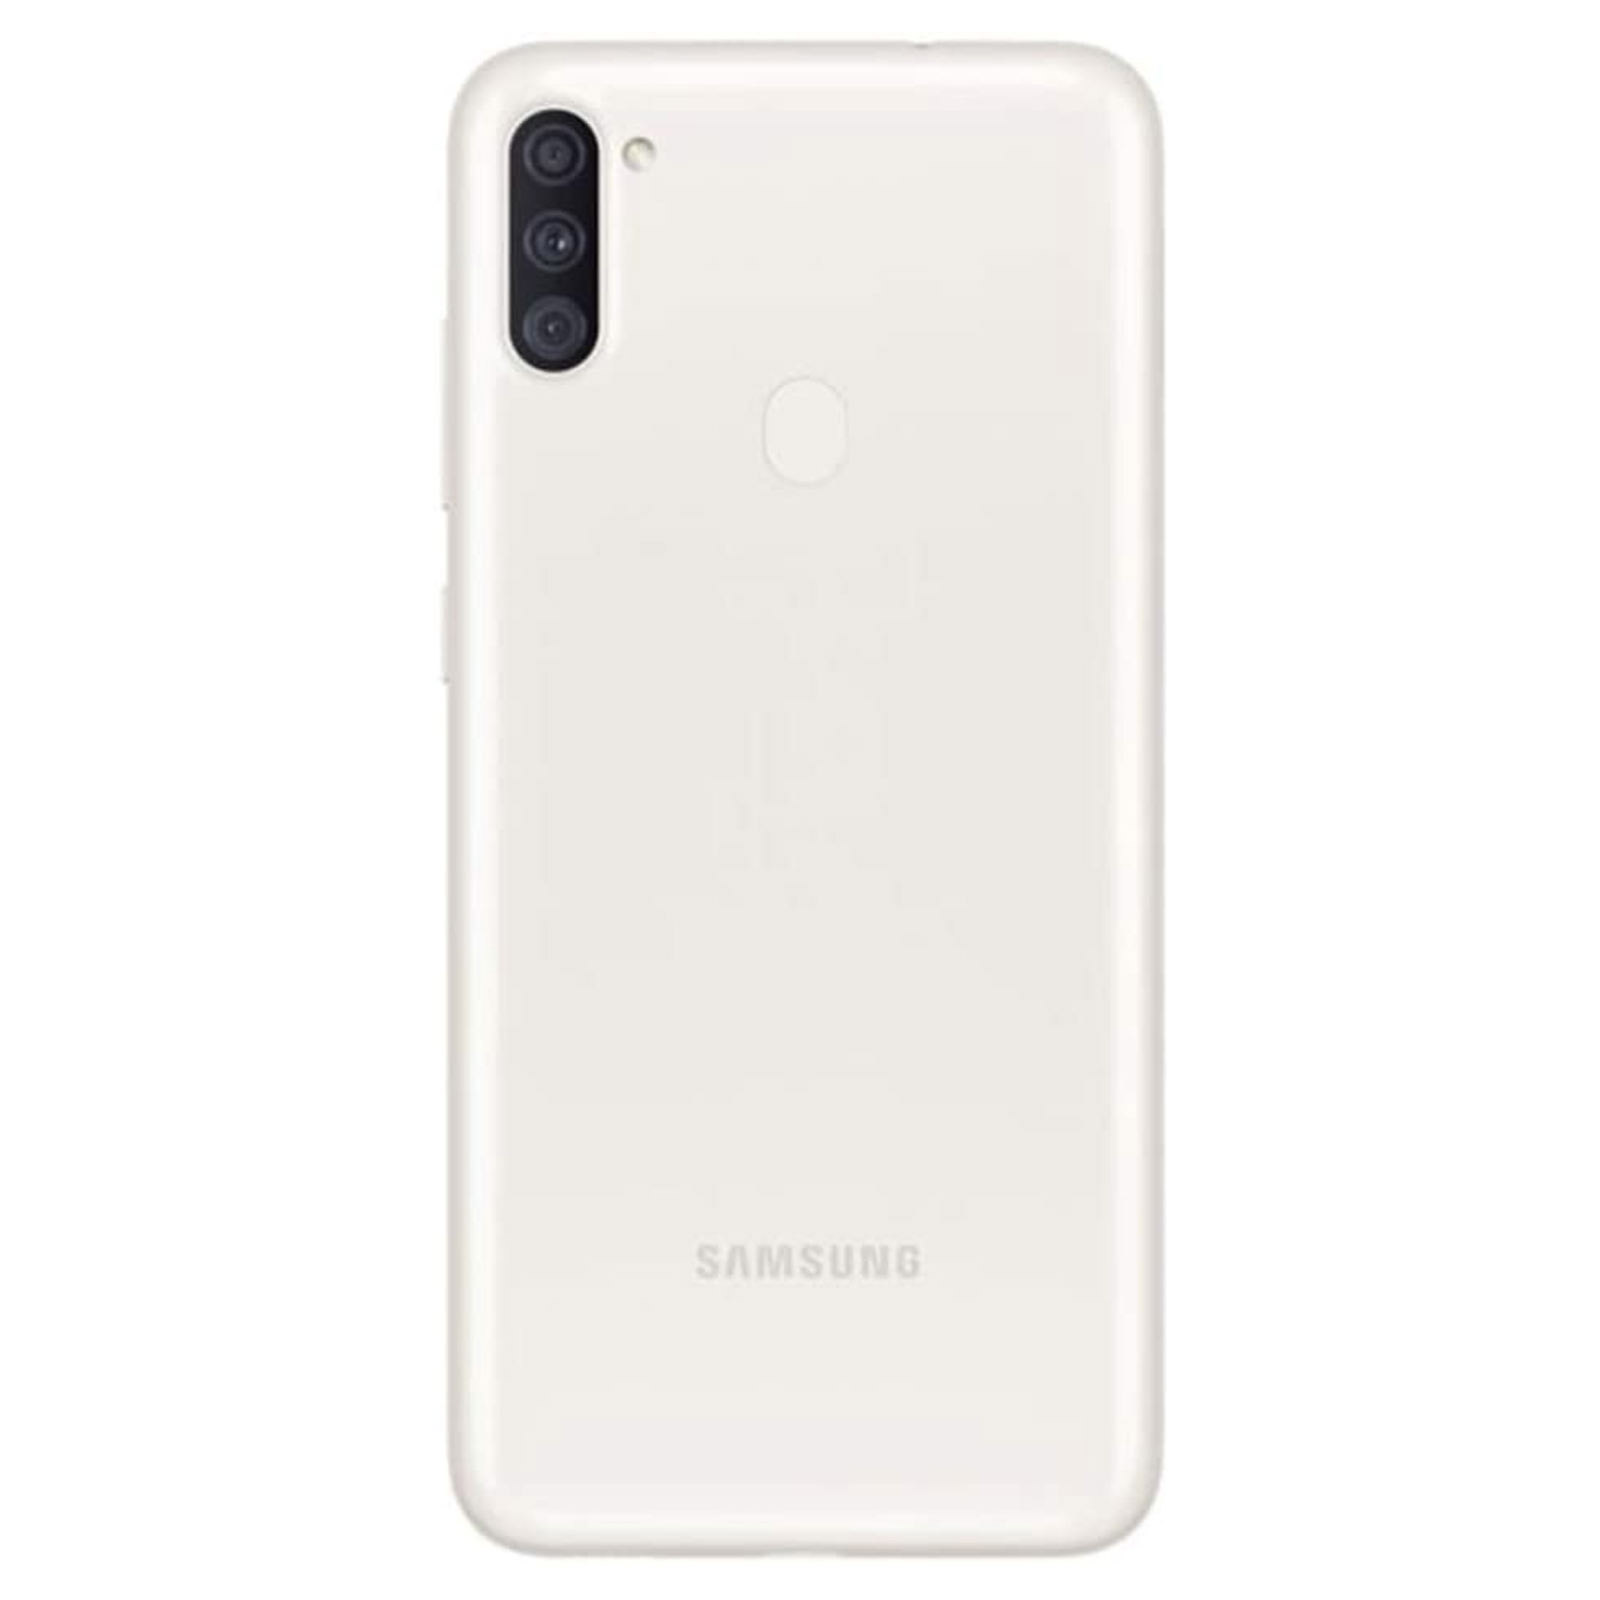 فروش نقدی و اقساطی گوشی موبایل سامسونگ مدل Galaxy A11 SM-A115F/DS دو سیم کارت ظرفیت 32 گیگابایت